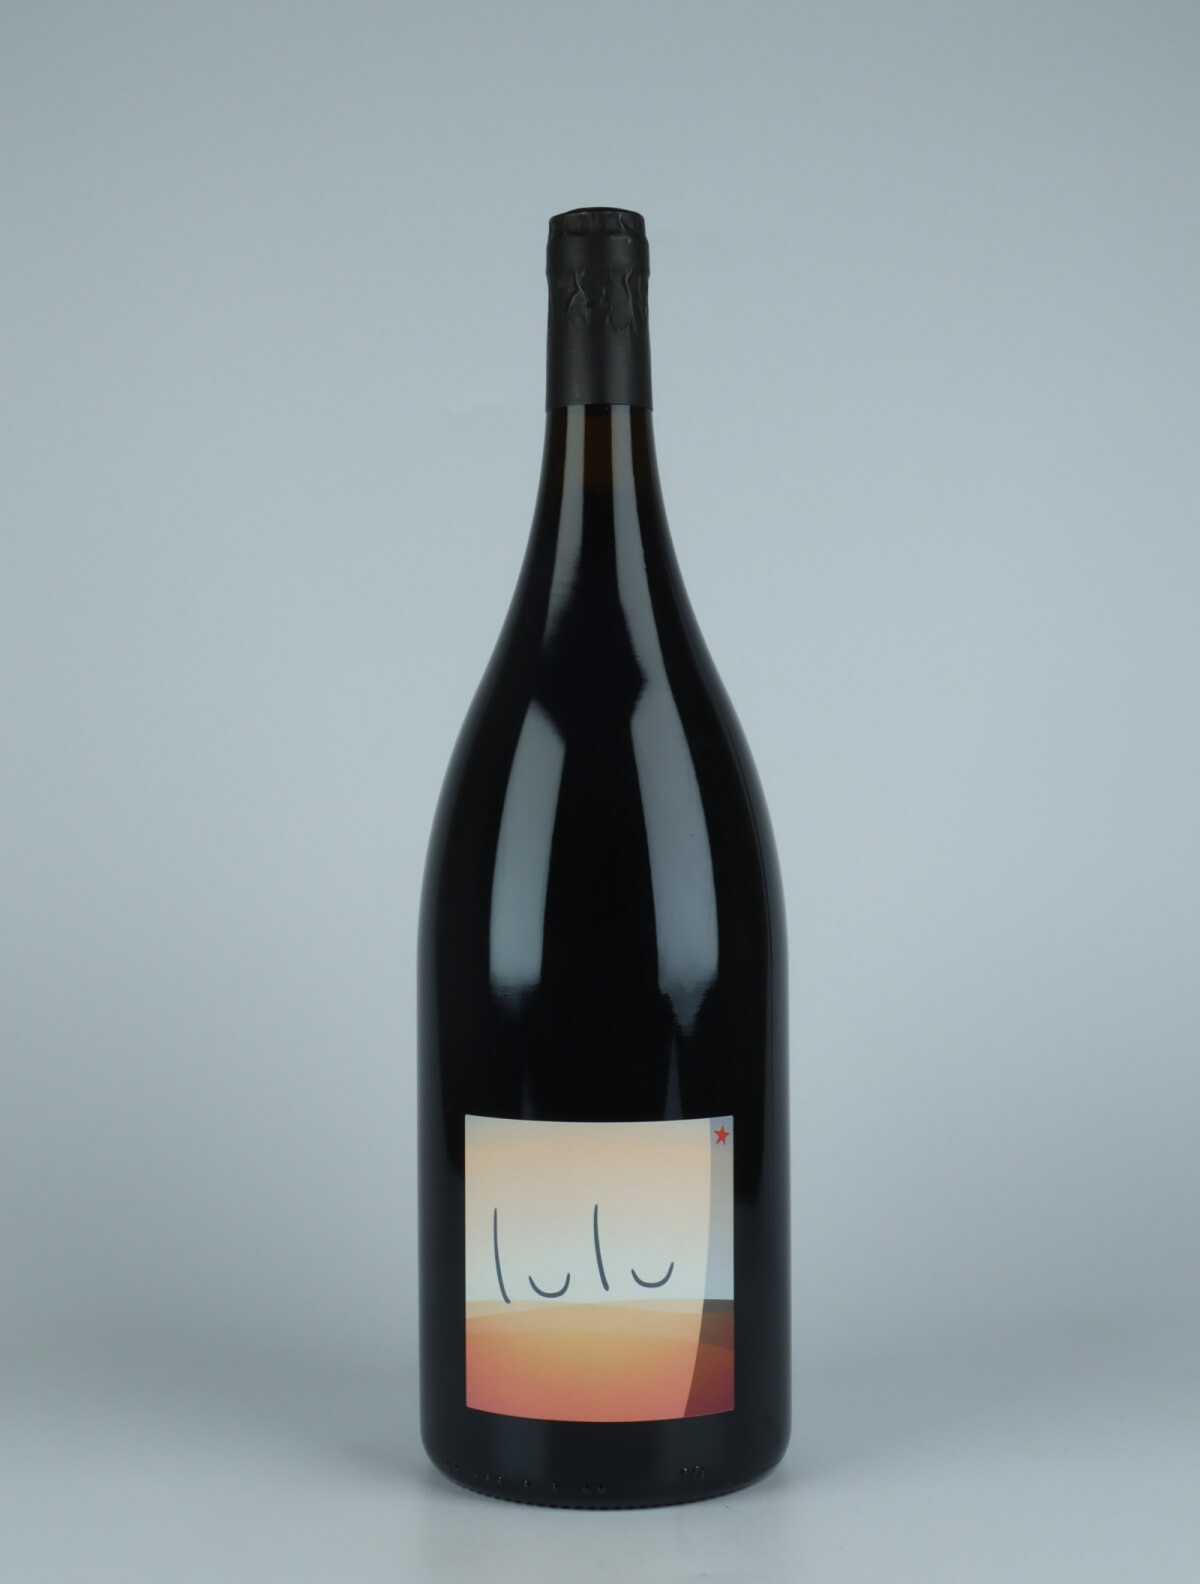 En flaske 2021 Lulu - Magnum Rødvin fra Patrick Bouju, Auvergne i Frankrig